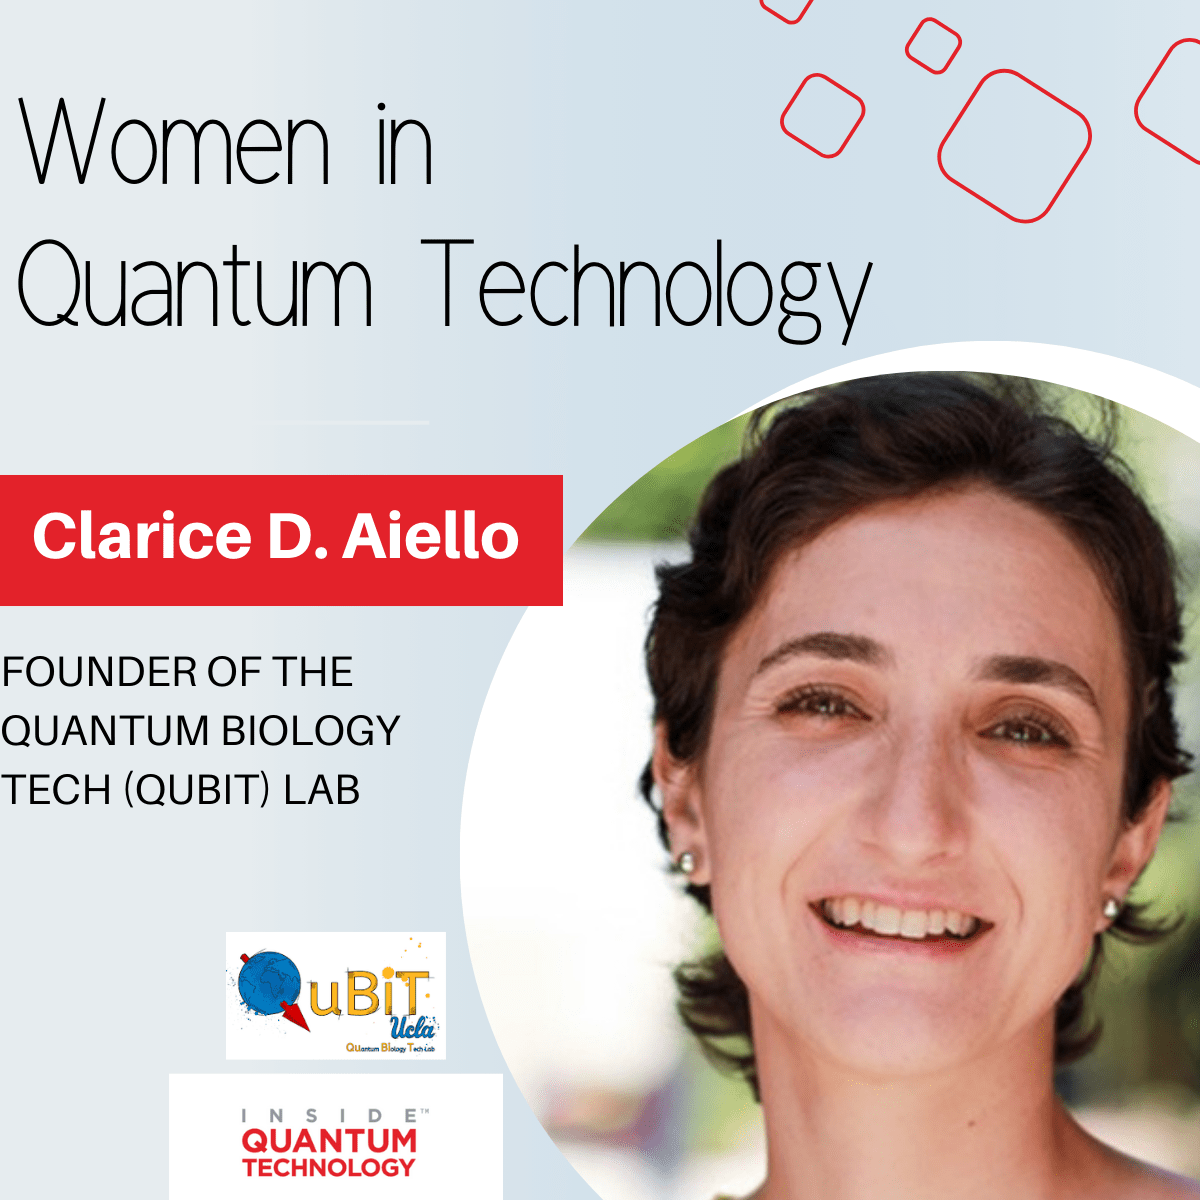 تتحدث الدكتورة كلاريس د. أييلو، مؤسسة مختبر QuBiT، عن رحلتها إلى النظام البيئي الكمي.